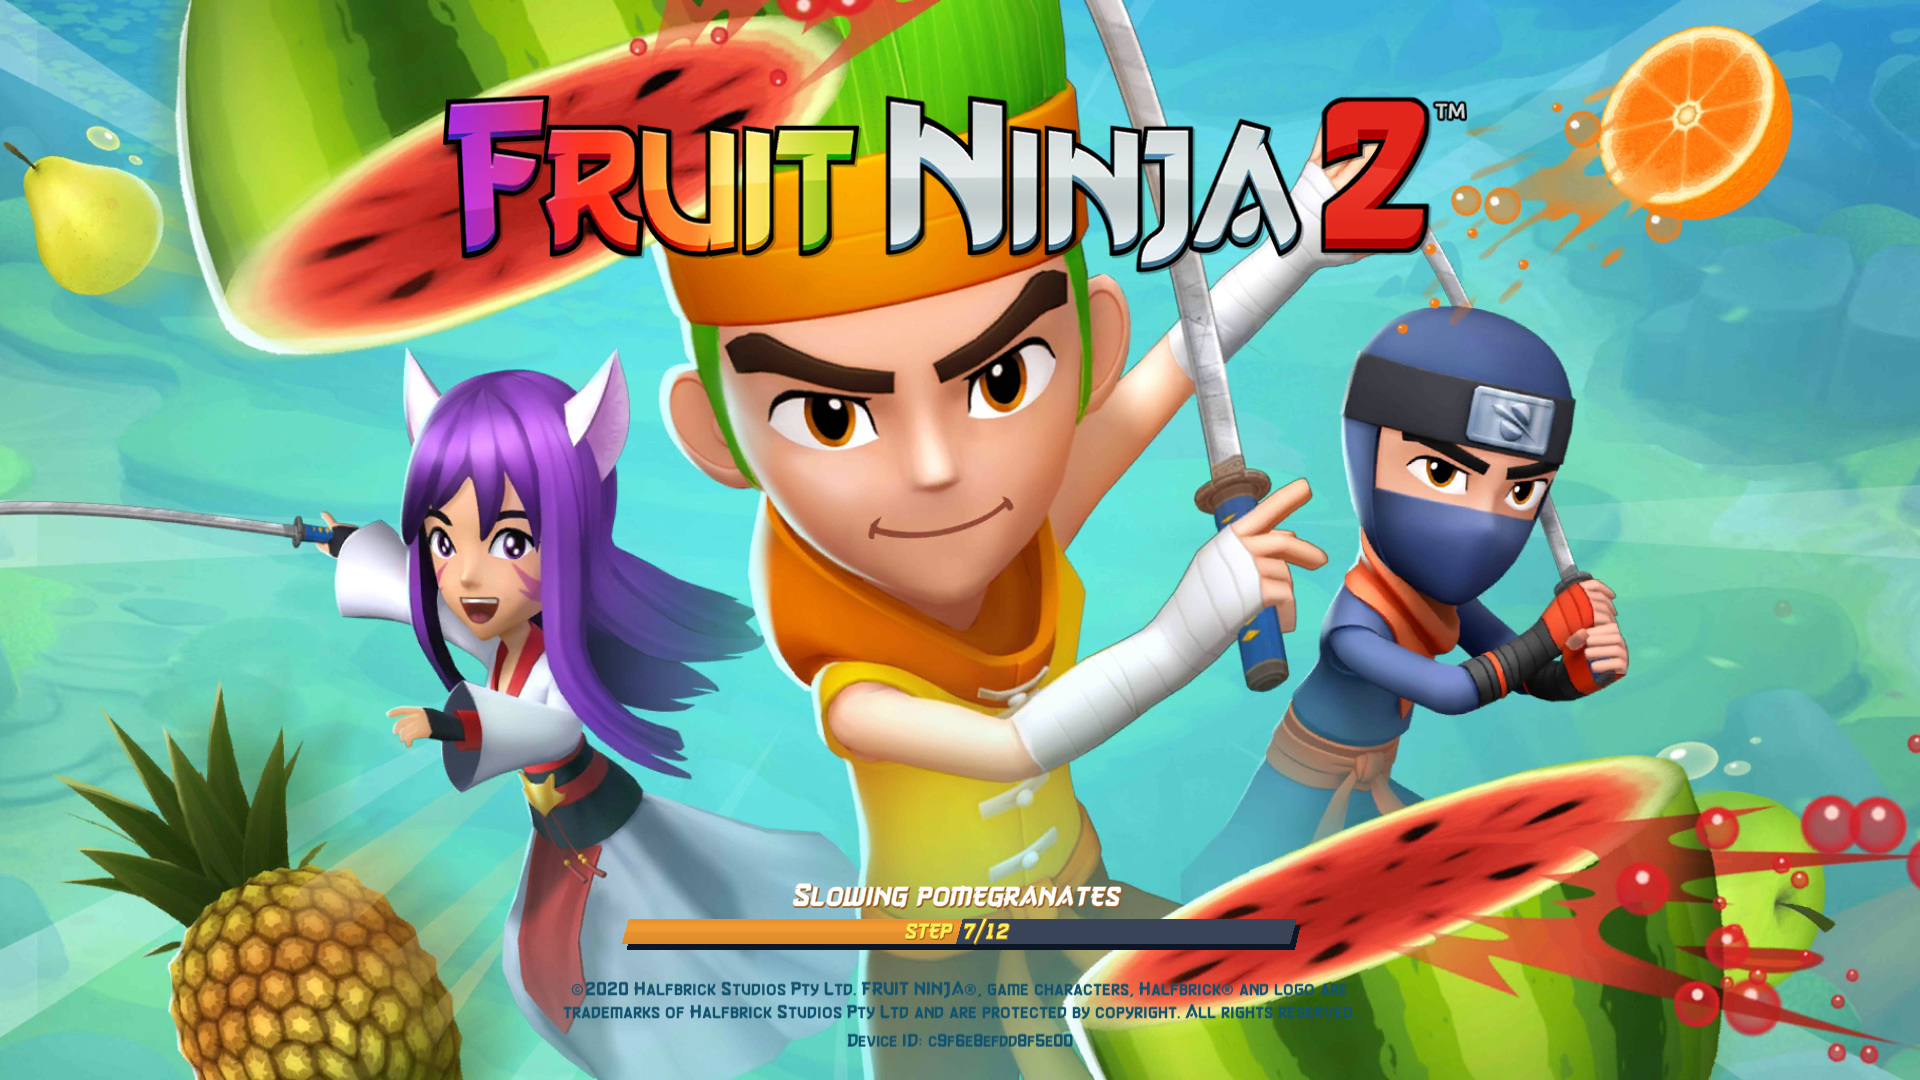 Fruit ninja 2 online